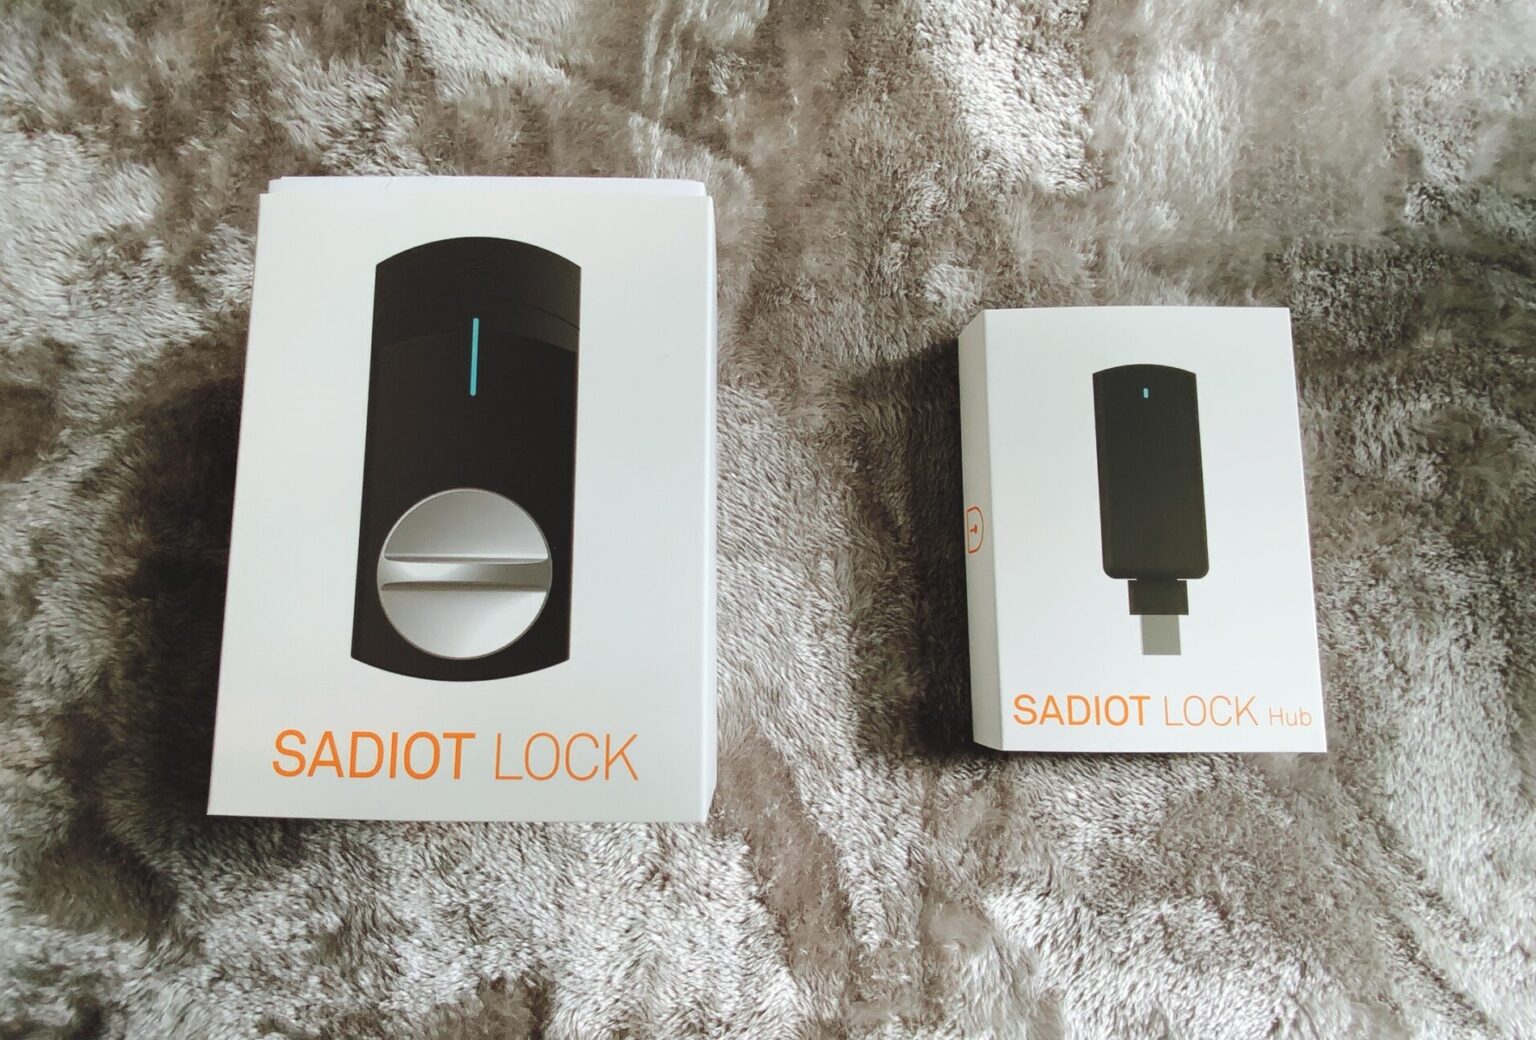 【レビュー】SADIOT LOCKが最強のスマートロックだと思う - SmartDog